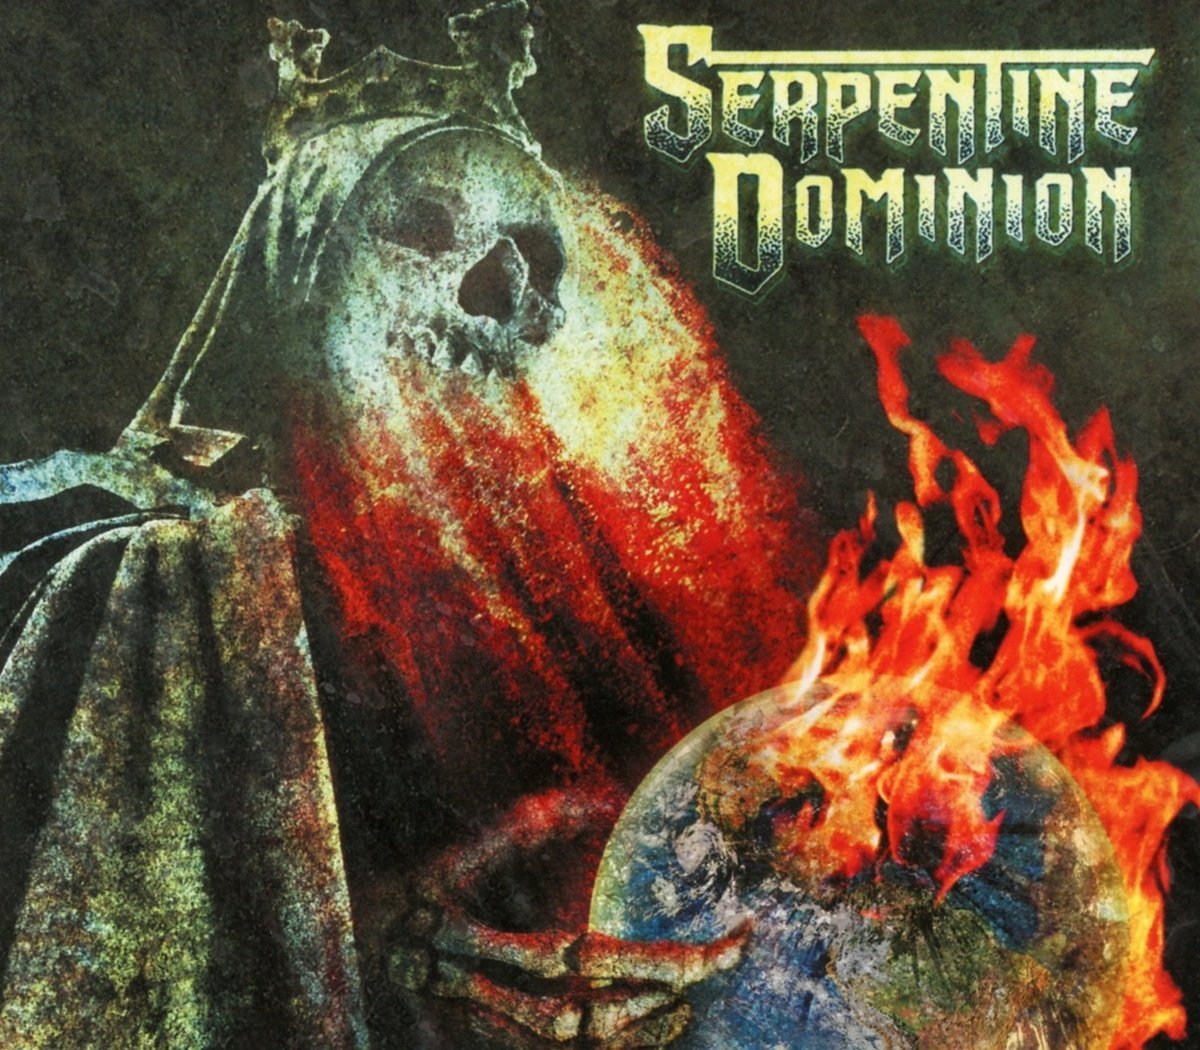 Serpentine Dominion "Serpentine Dominion" Digipak CD